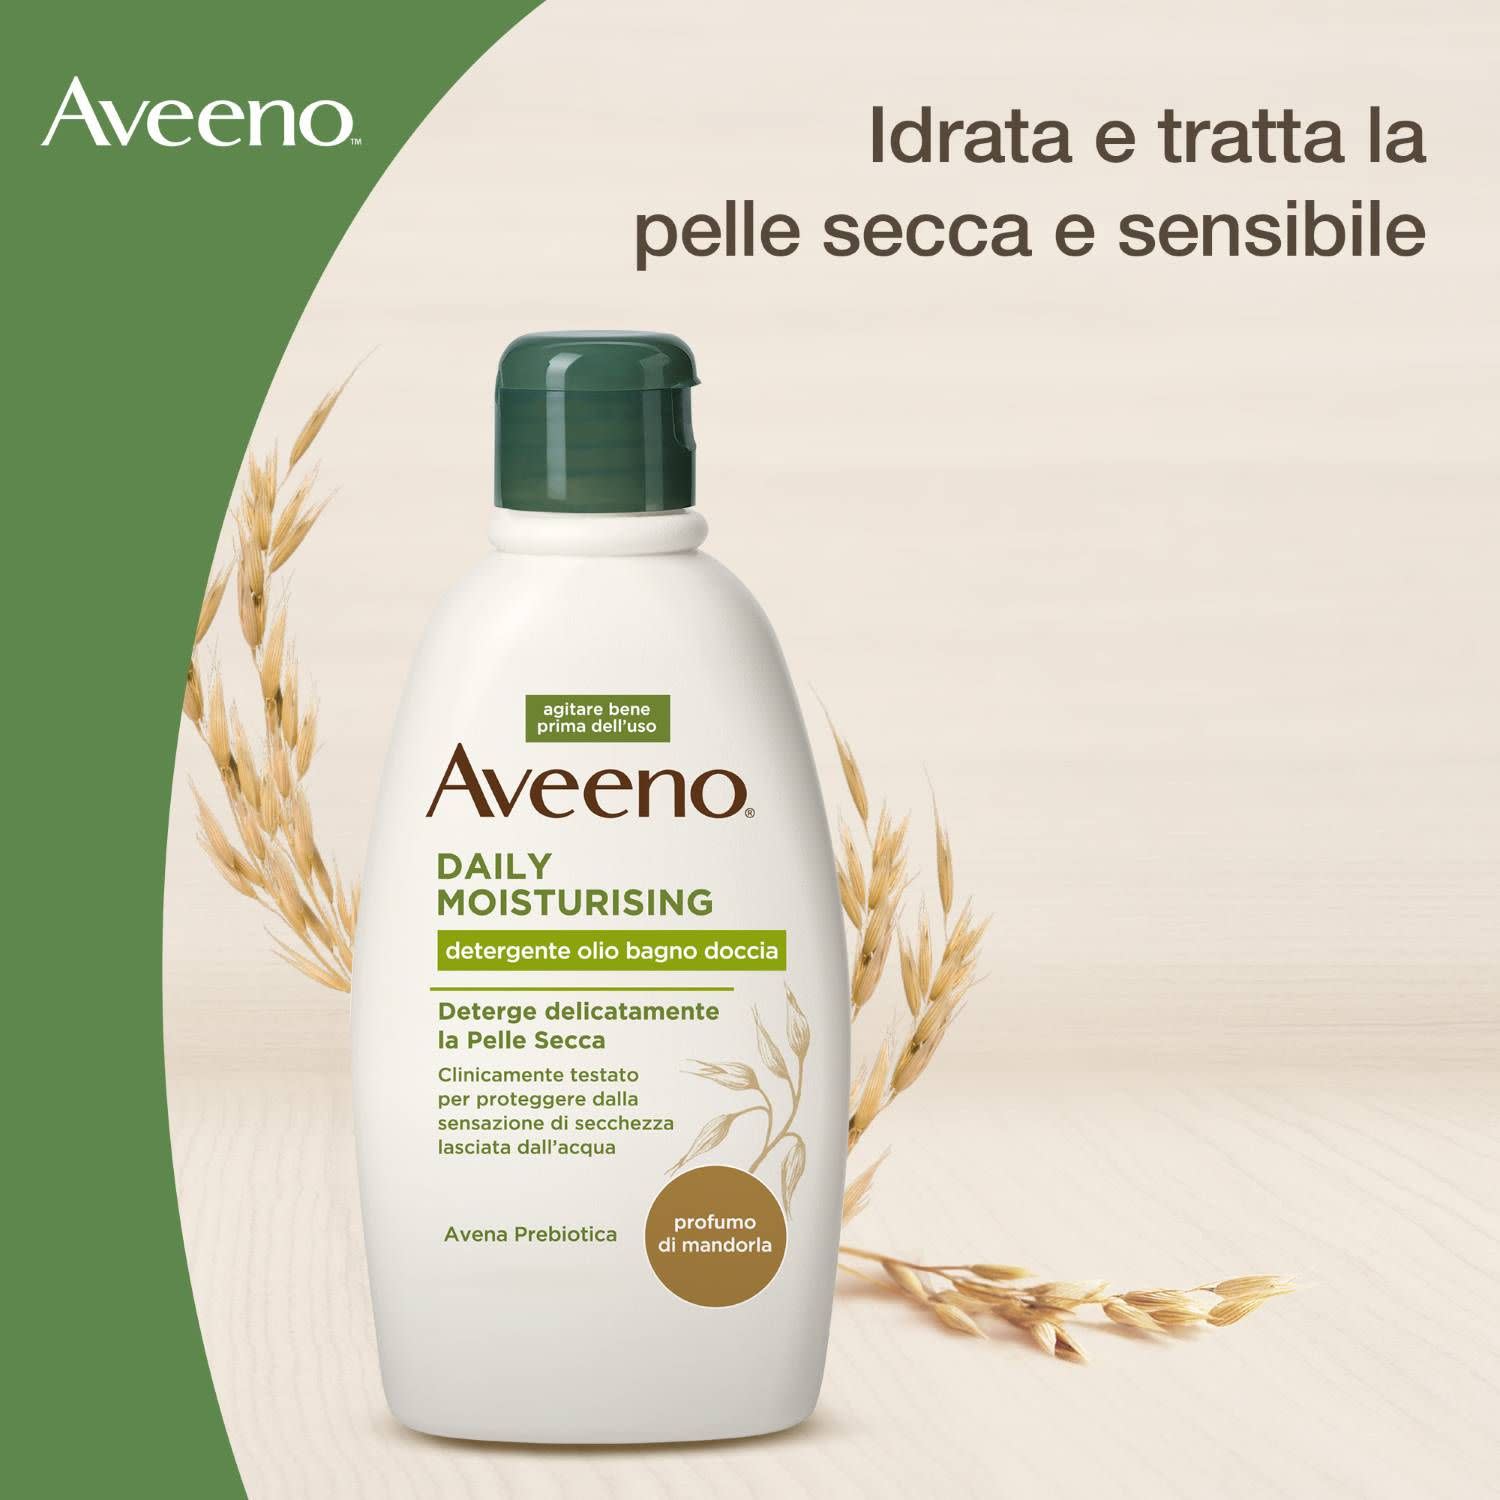 980547501 - Aveeno Daily Moisturising Detergente Olio quotidiano pelle sensibile 300ml - 4736625_2.jpg